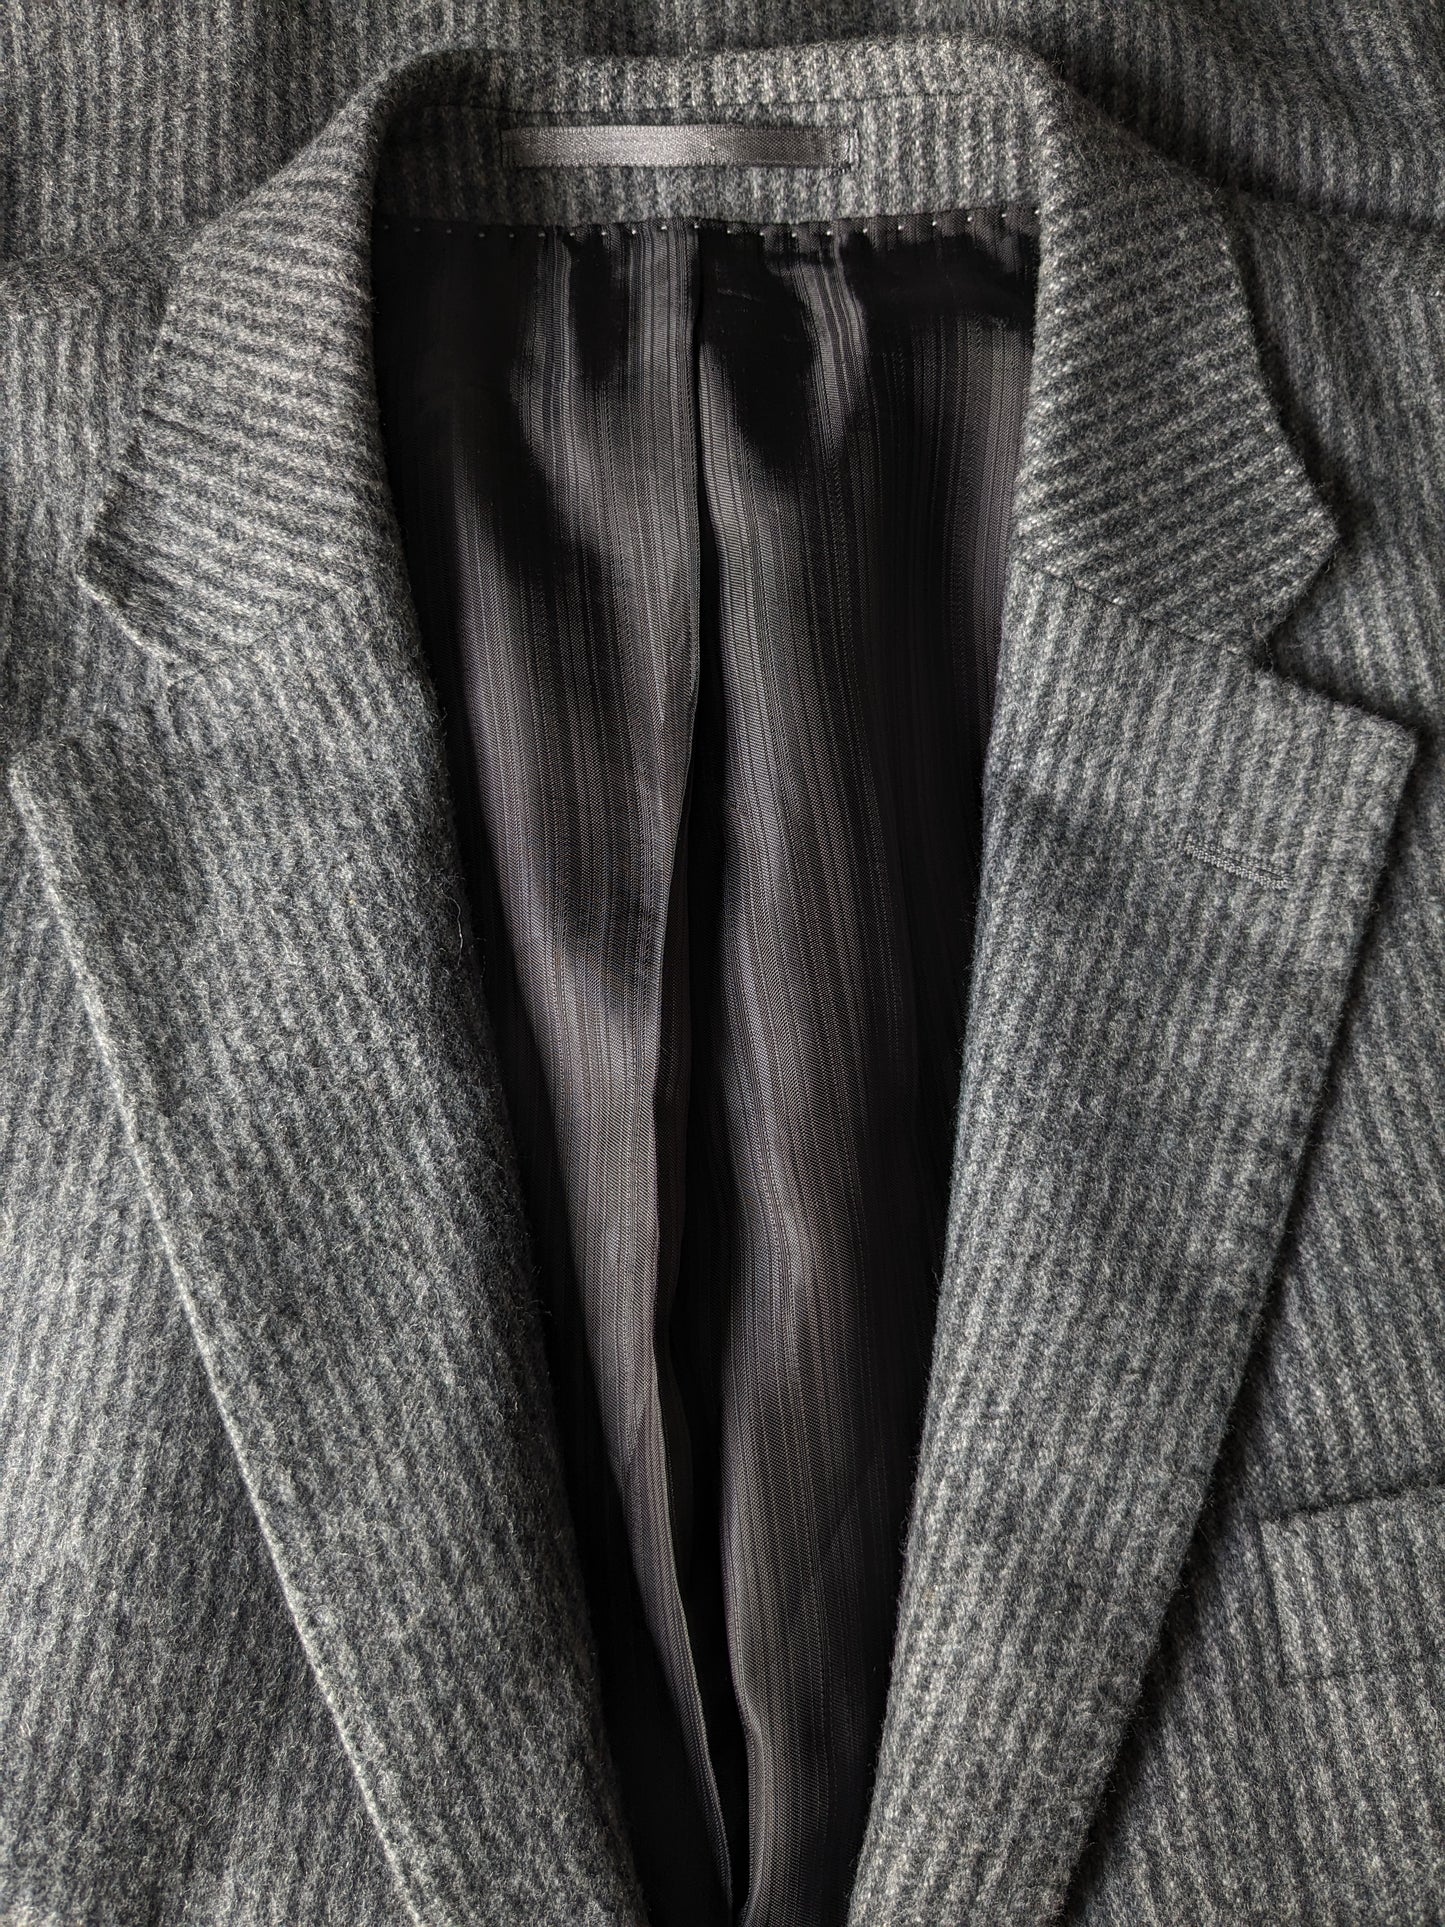 Stones woolen jacket. Gray striped. Size 52 / L. 65% wool.